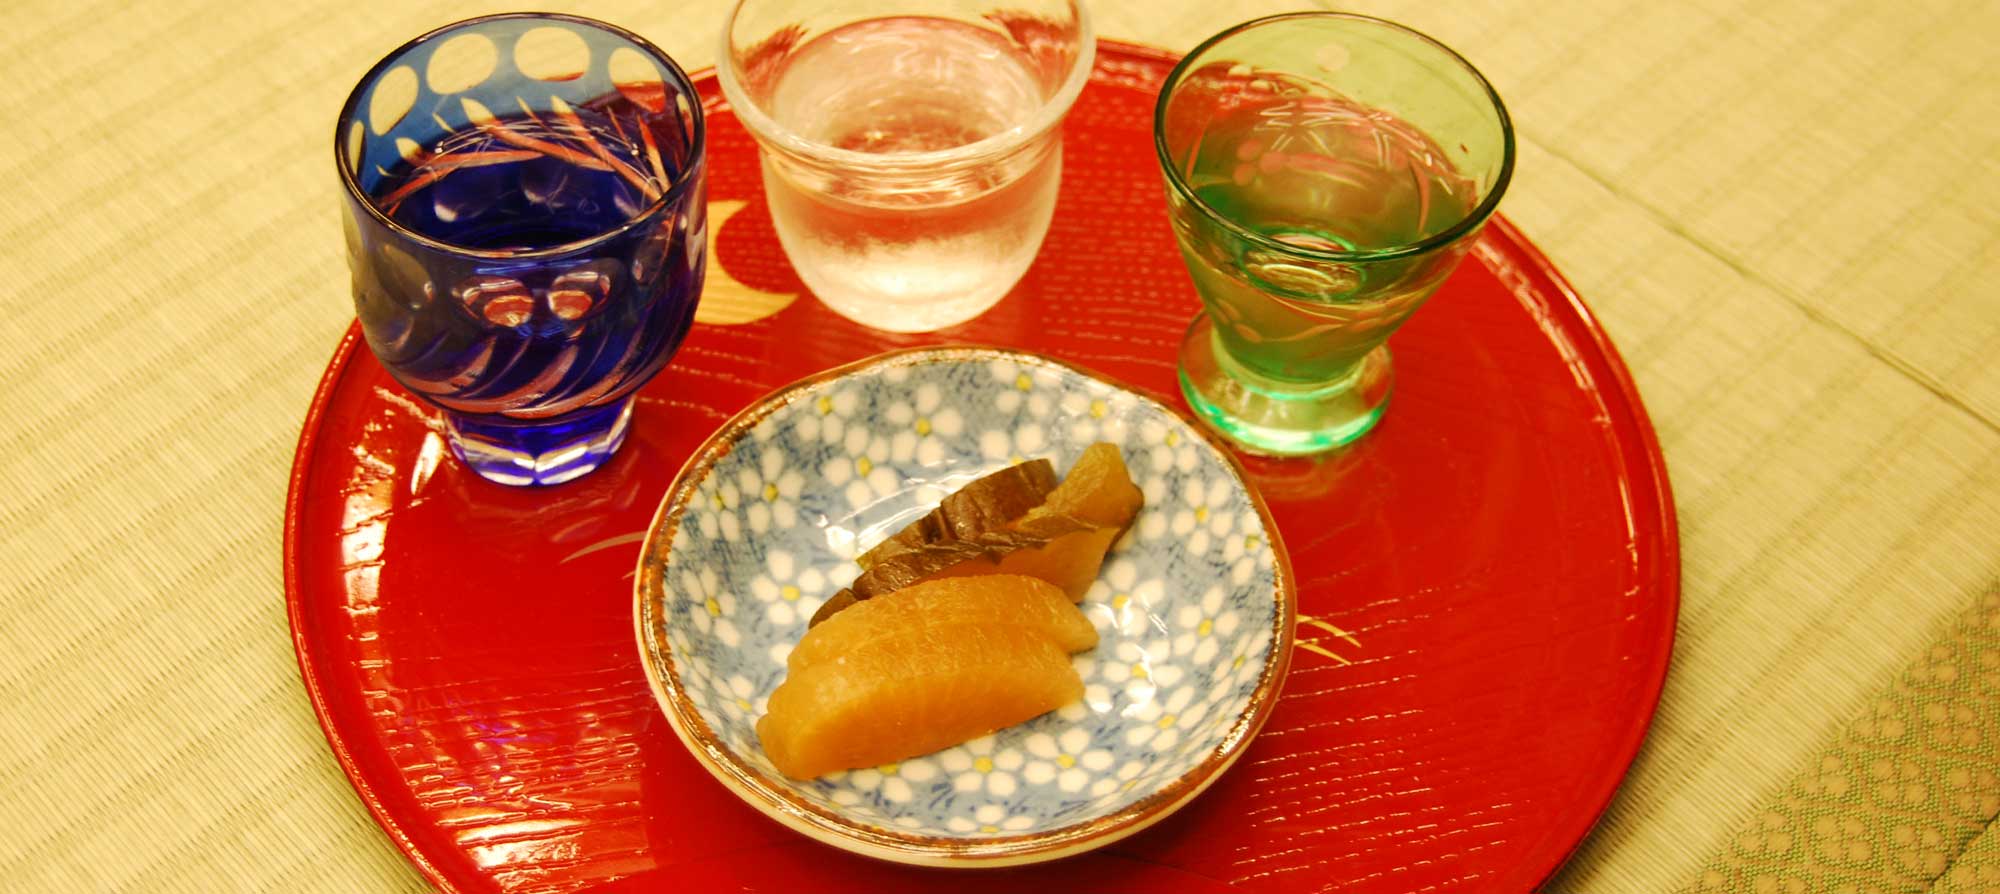 Набор для дегустации трех видов сакэ с закуской из японских традиционных солений